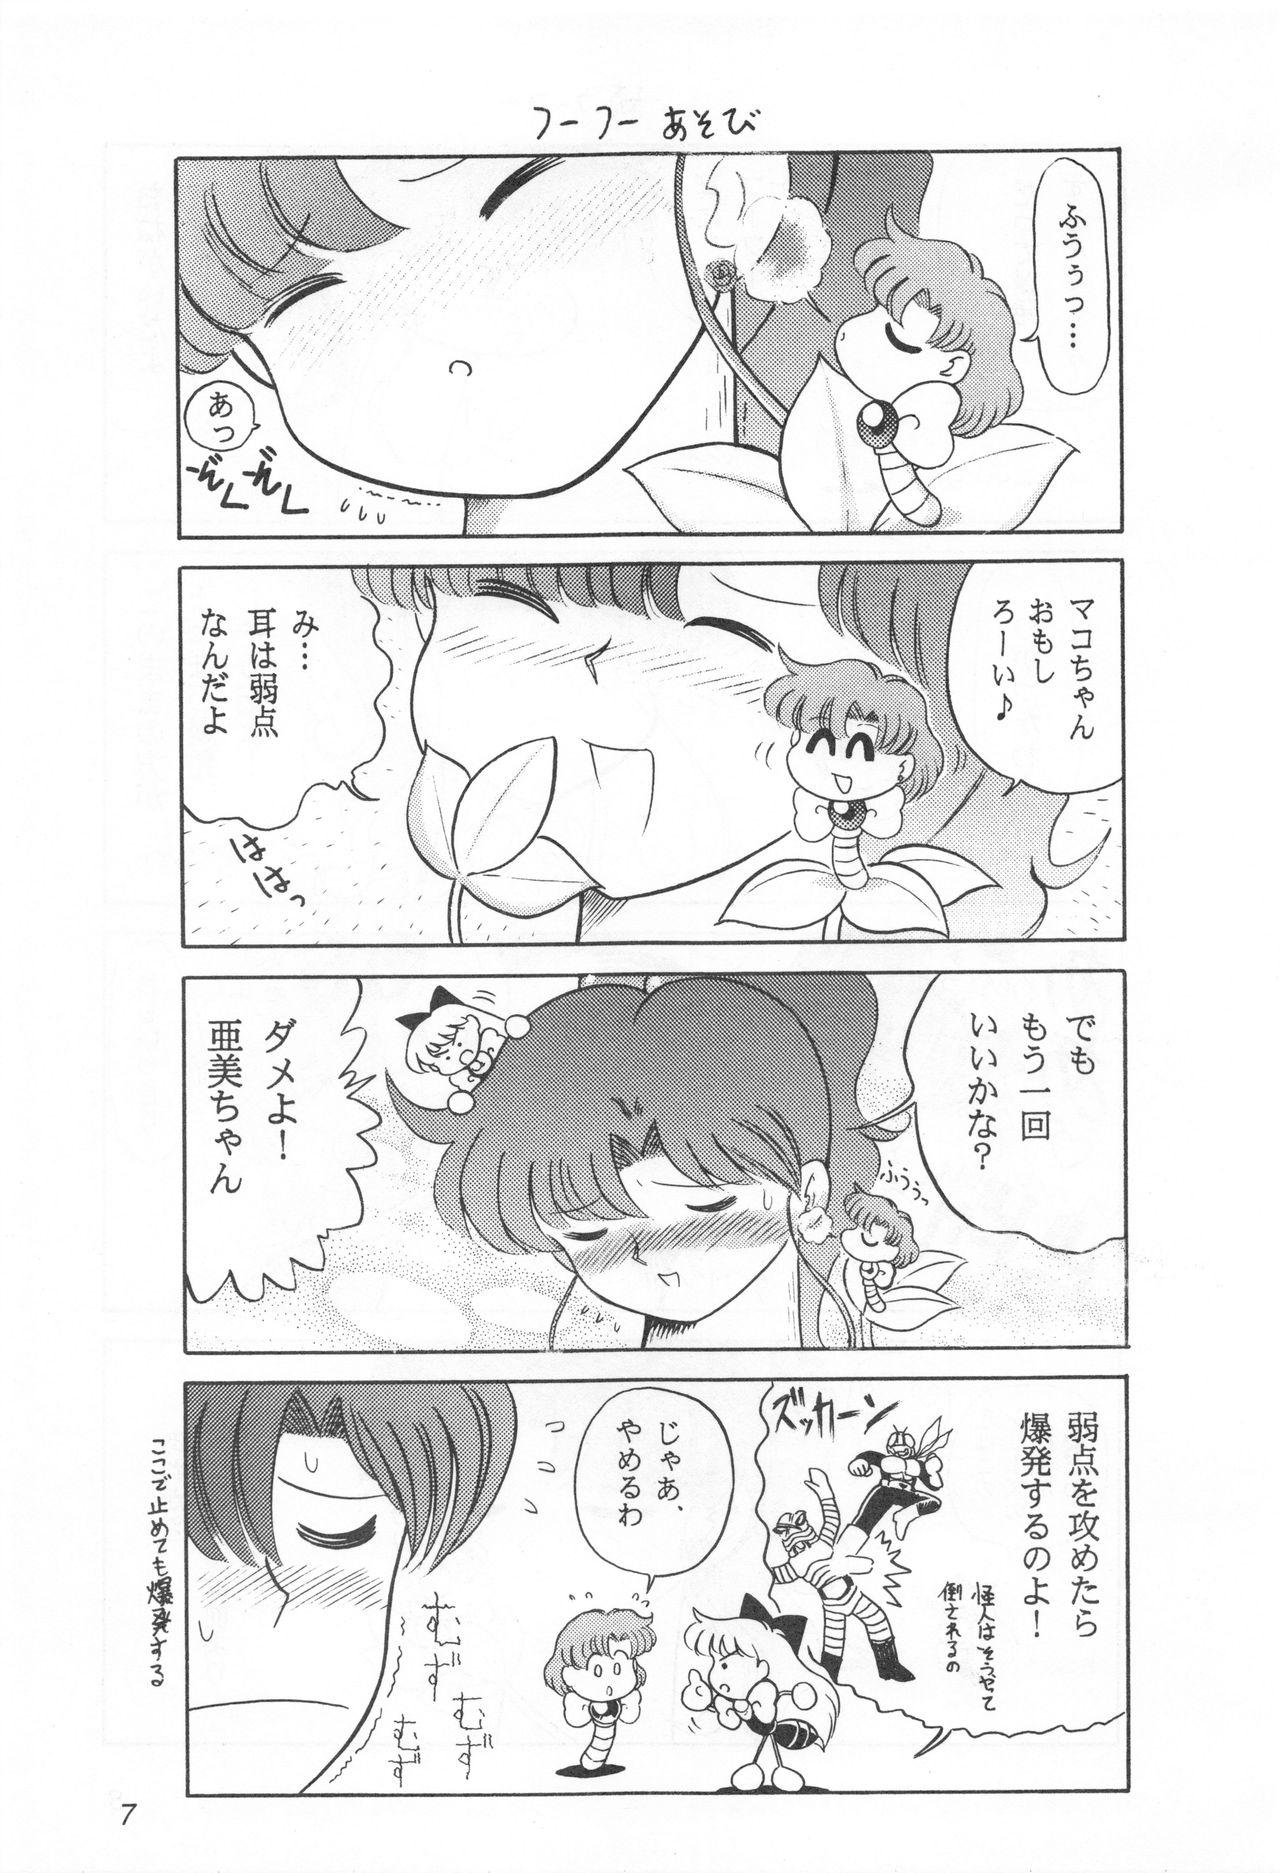 Blowjob Mimizu no Ami-chan Vol. 2 - Sailor moon Exotic - Page 6